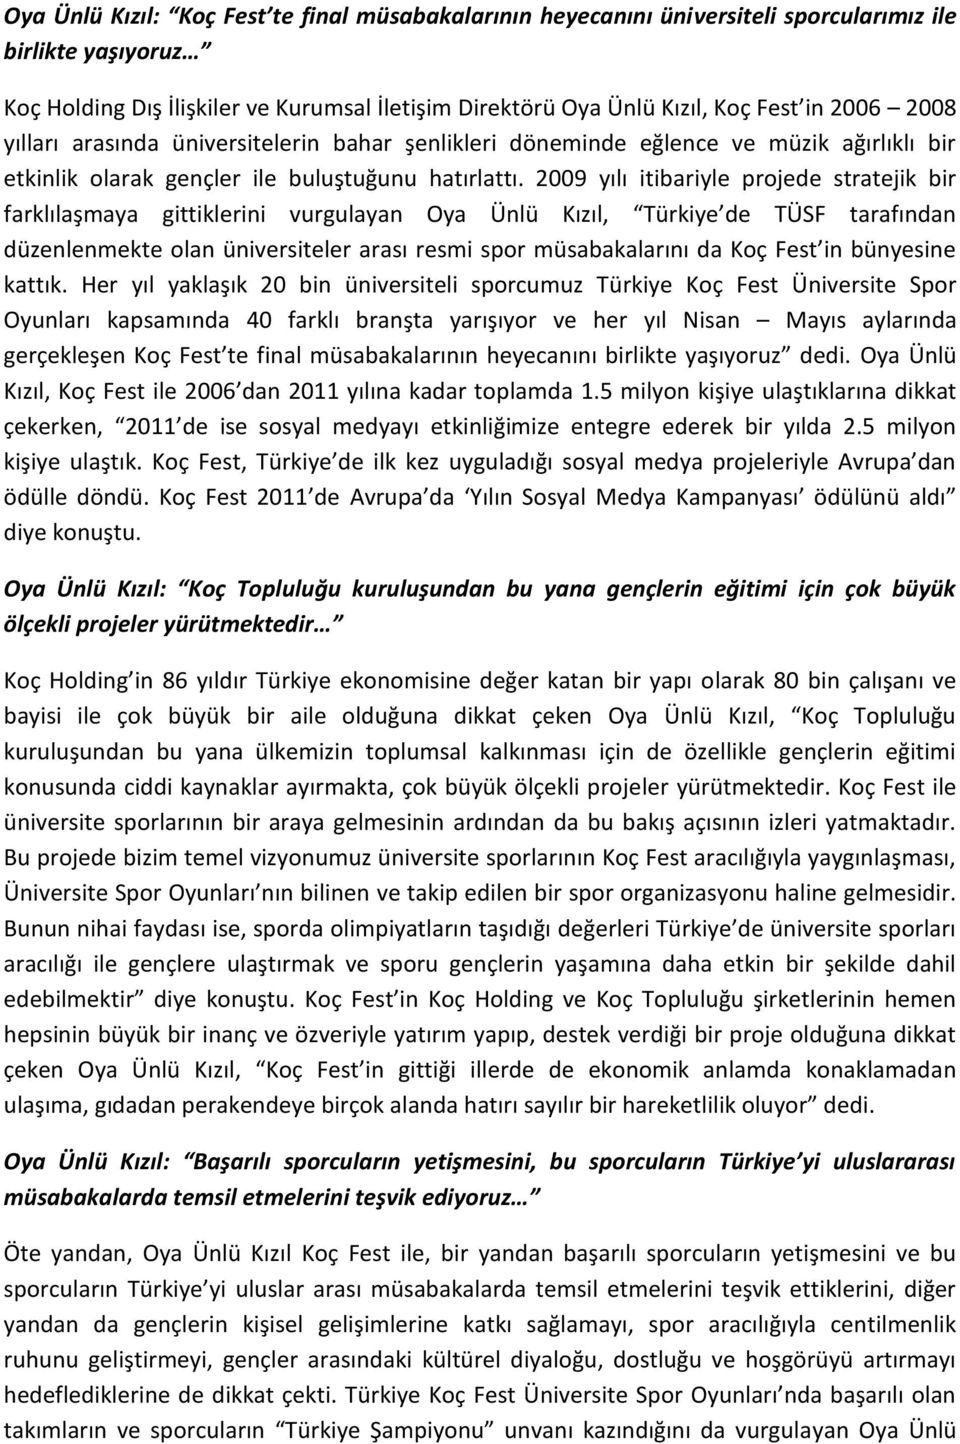 2009 yılı itibariyle projede stratejik bir farklılaşmaya gittiklerini vurgulayan Oya Ünlü Kızıl, Türkiye de TÜSF tarafından düzenlenmekte olan üniversiteler arası resmi spor müsabakalarını da Koç